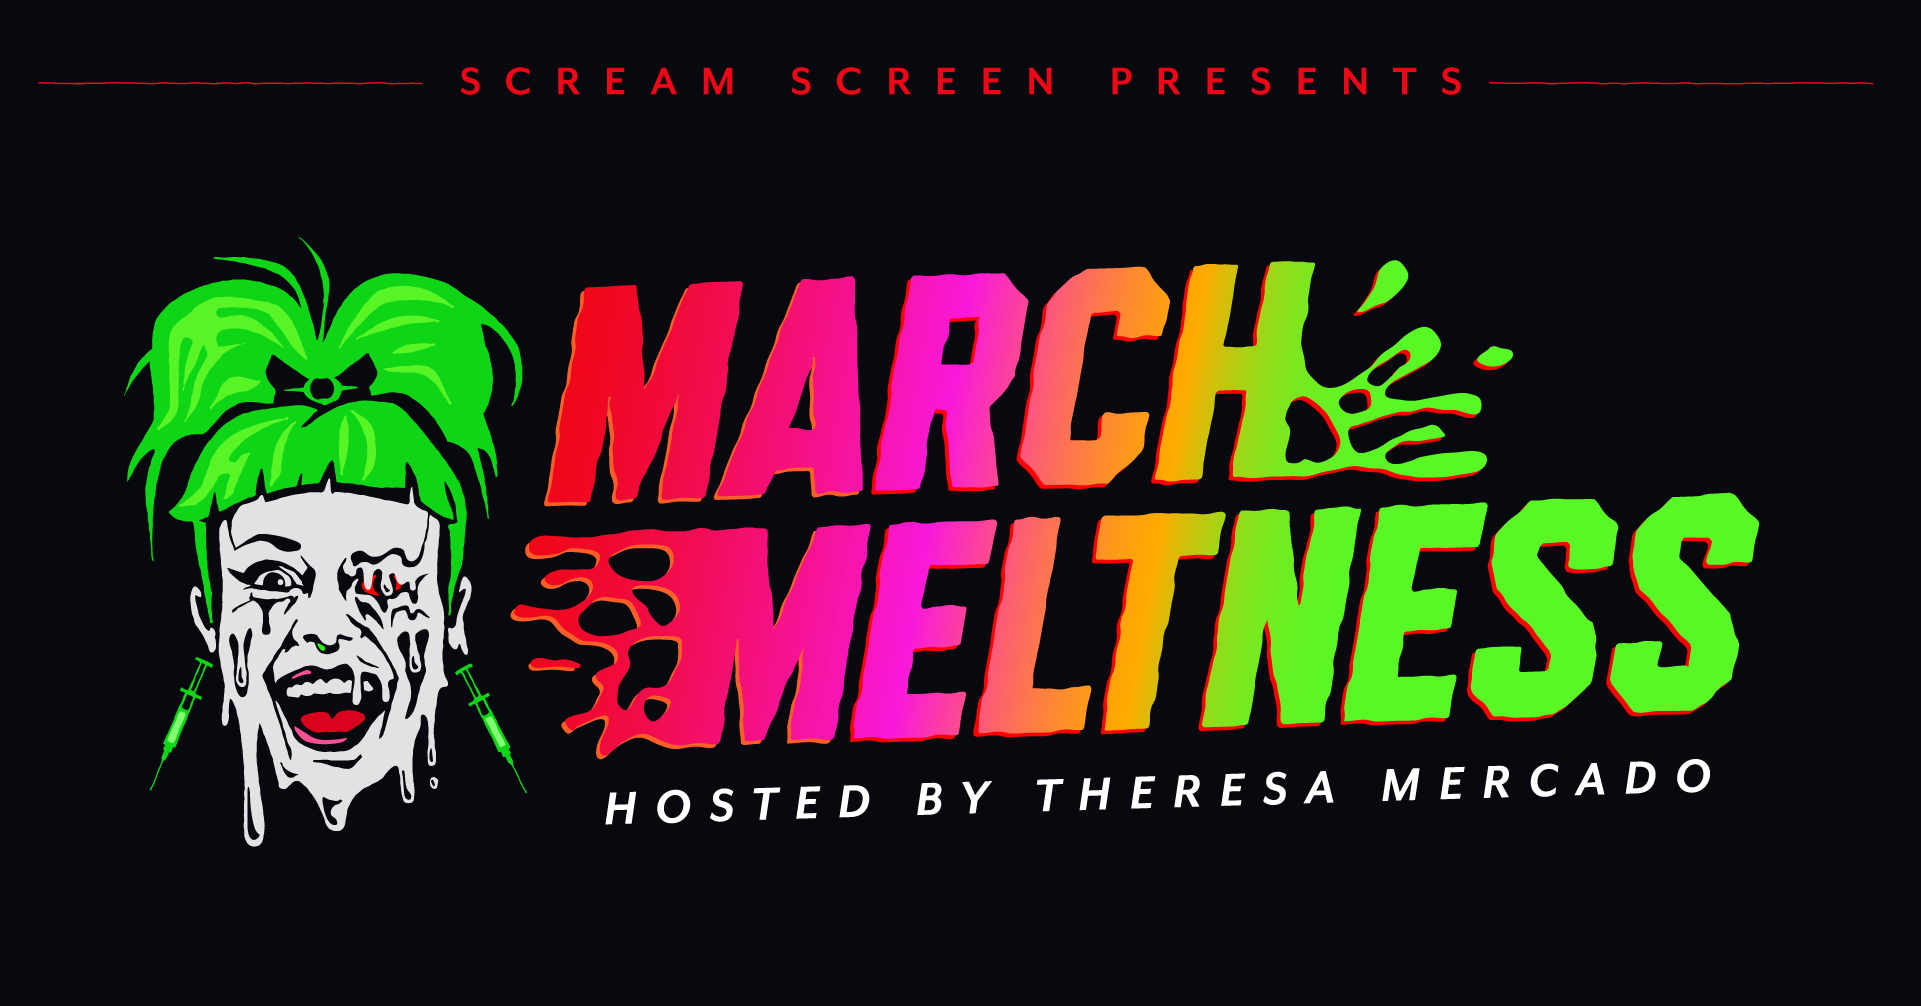 Scream Screen presents: